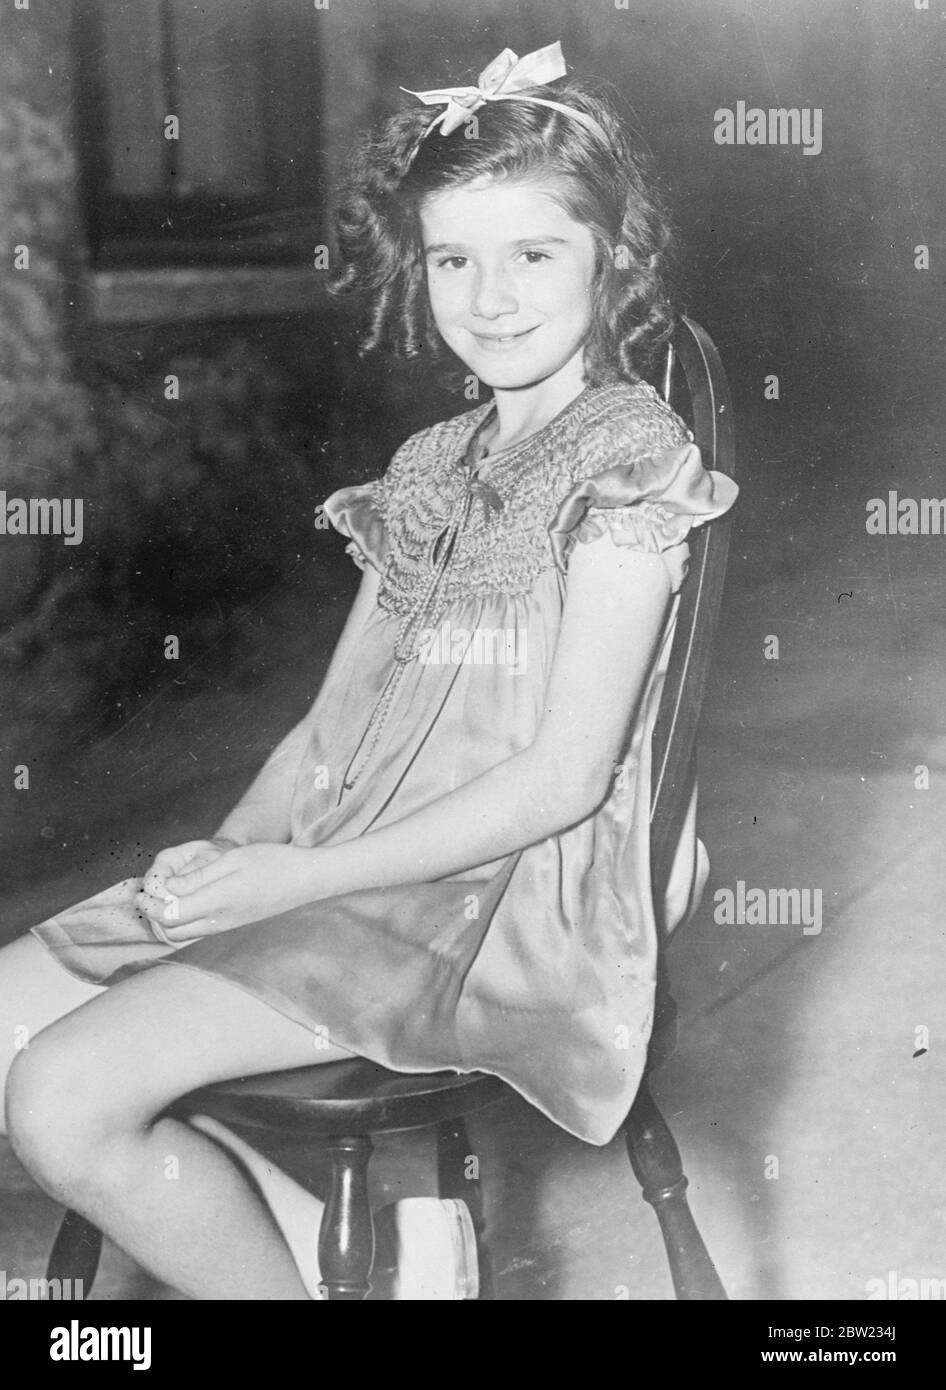 Jacqueline Lane, el Templo Shirley de Gran Bretaña afirma que quiero ser yo no quiero ser un imitador Jacqueline Lane fotografiado en Nueva York en su camino a Hollywood. 31 agosto 1937 [?] Foto de stock